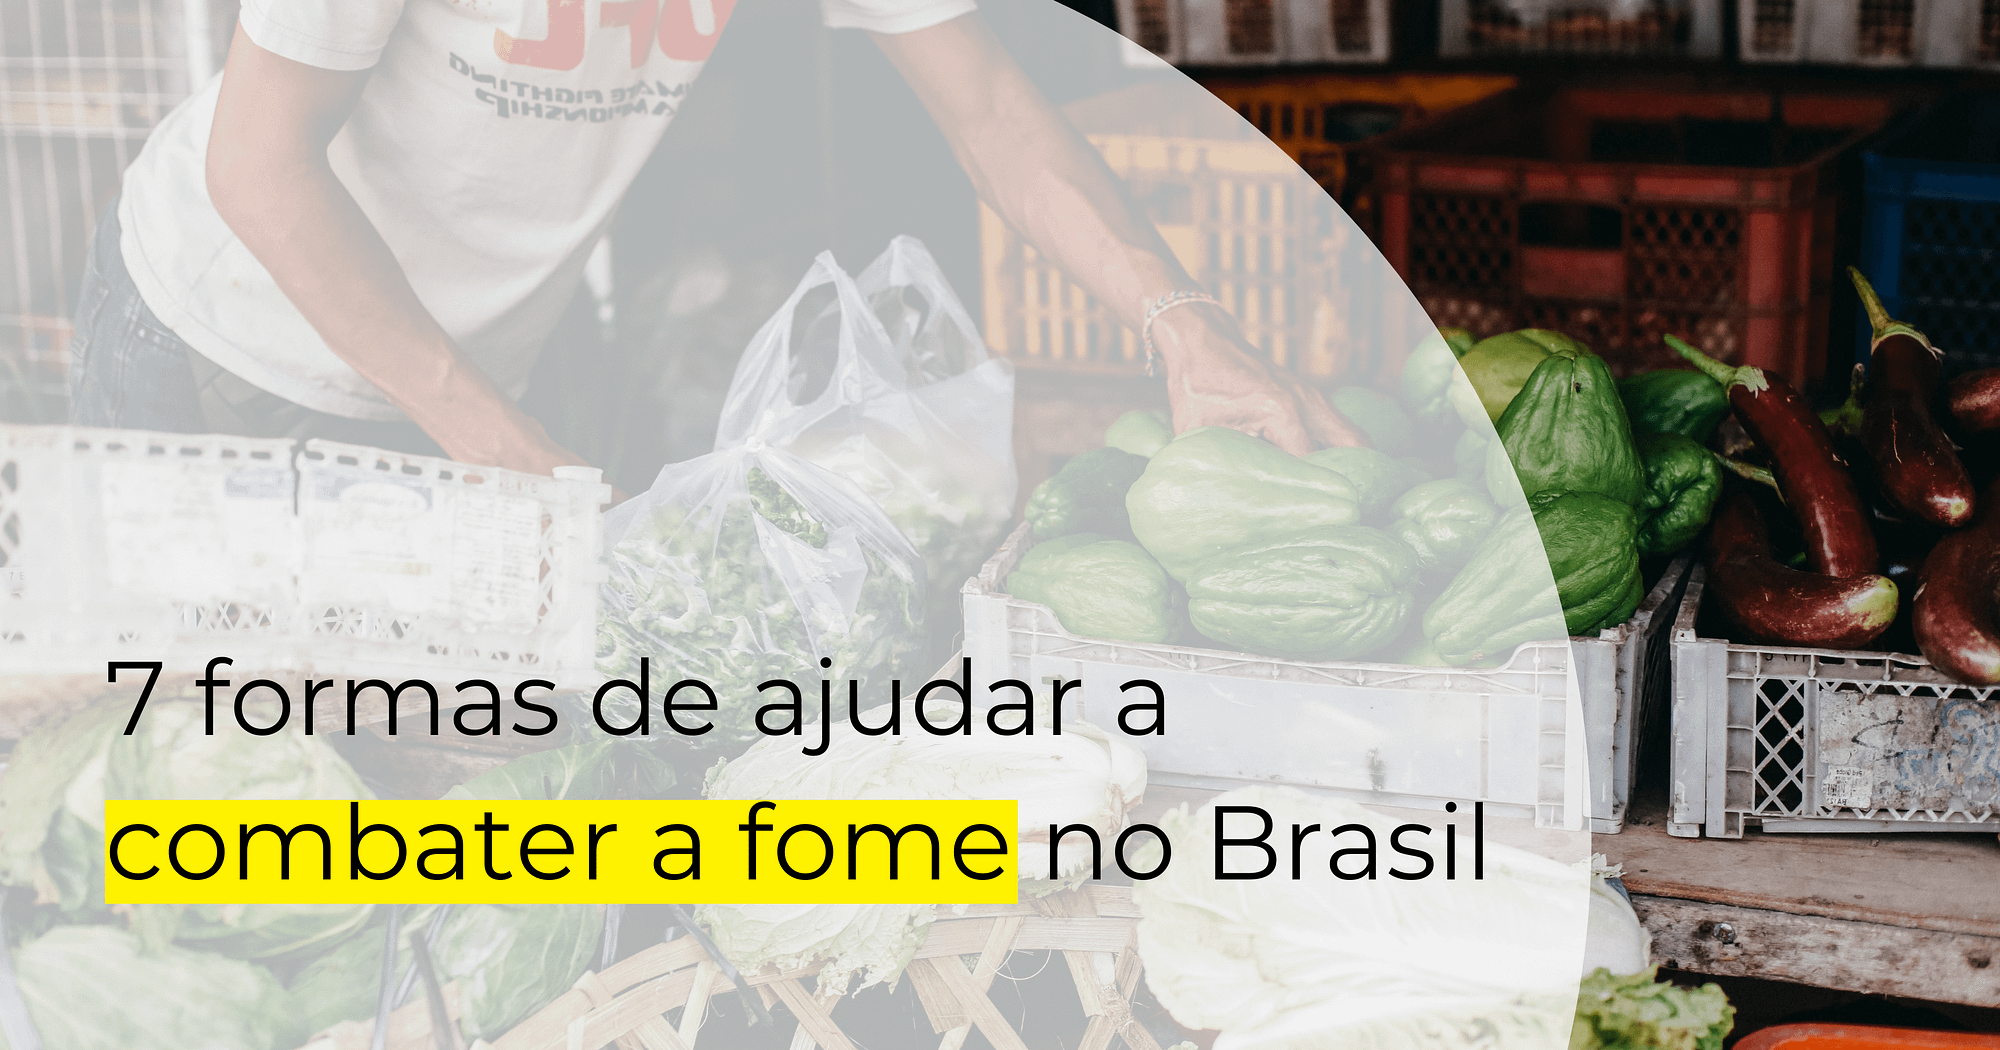 Pessoa escolhe legumes e verduras entre chuchus, berinjelas e abobrinhas. Em primeiro plano, o texto "7 formas de ajudar a combater a fome no Brasil"